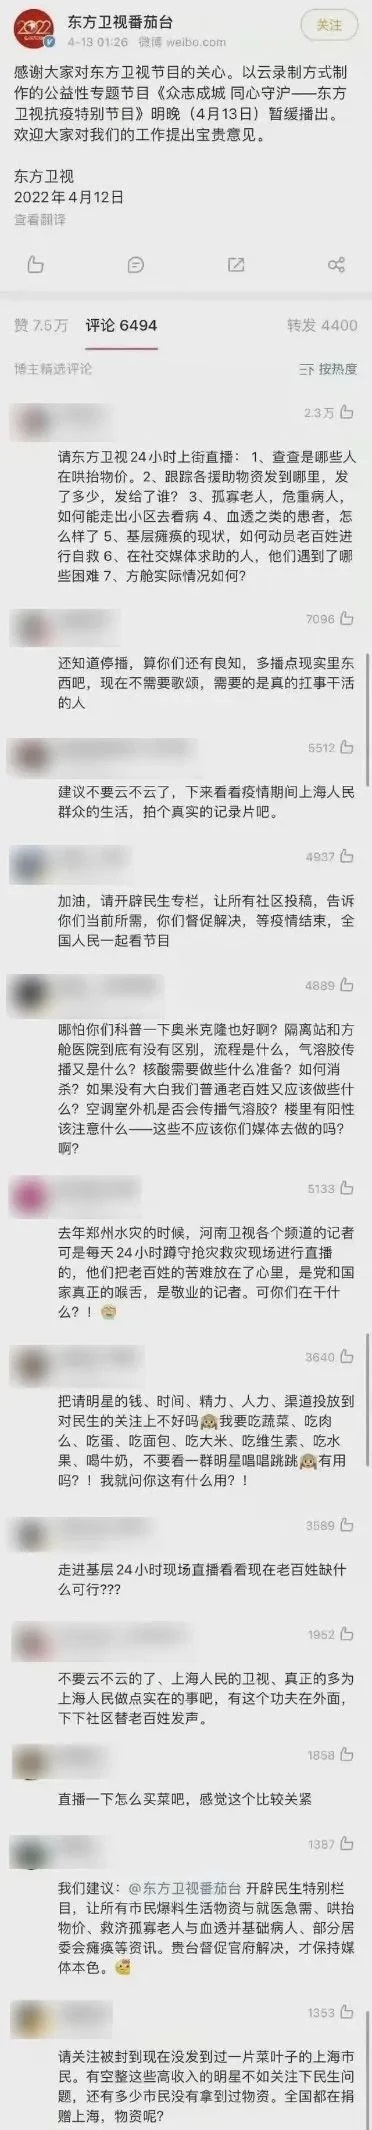 上海卫视的抗疫专题晚会被骂停了